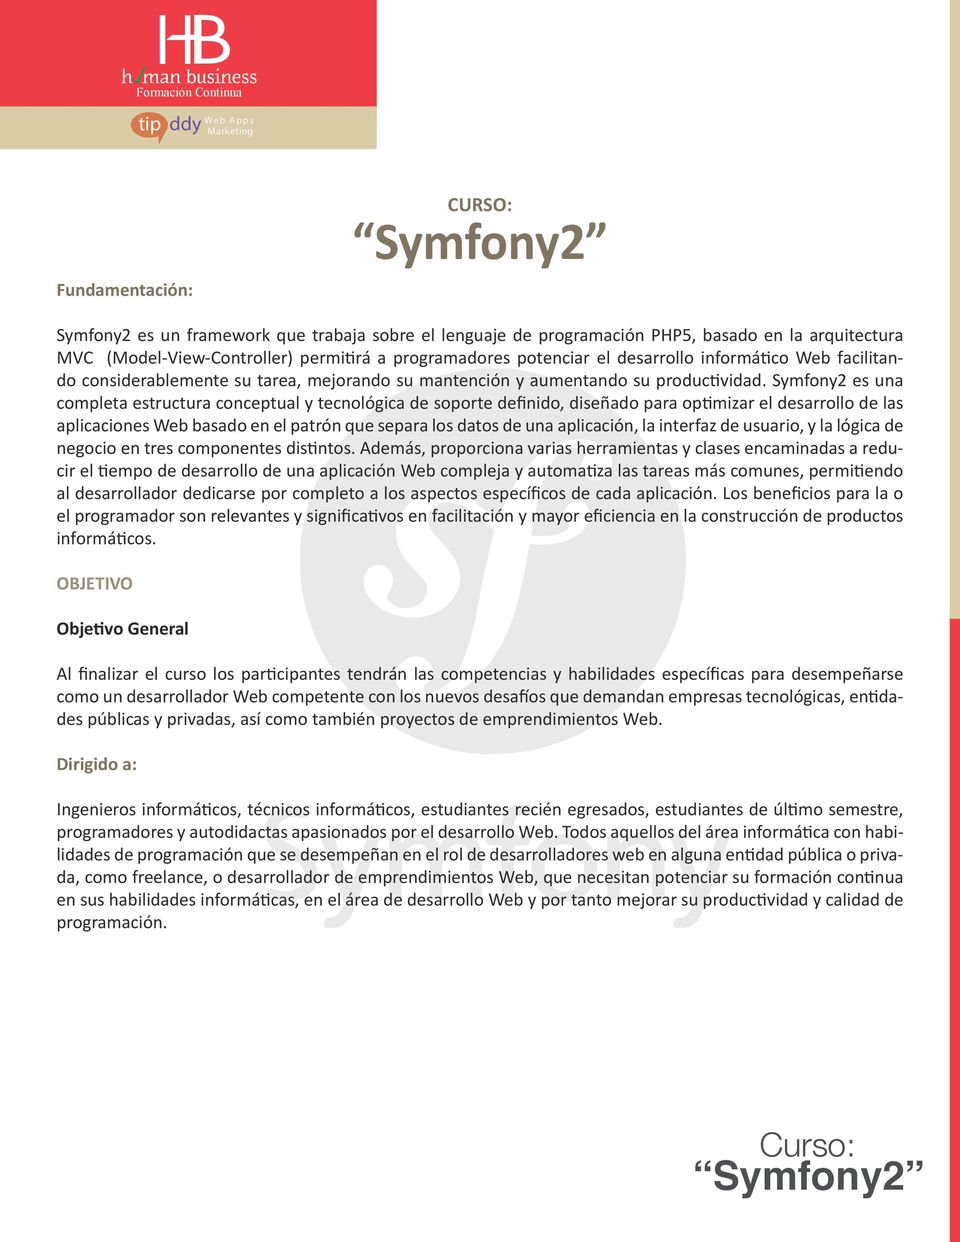 Symfony2 es una completa estructura conceptual y tecnológica de soporte definido, diseñado para optimizar el desarrollo de las aplicaciones Web basado en el patrón que separa los datos de una